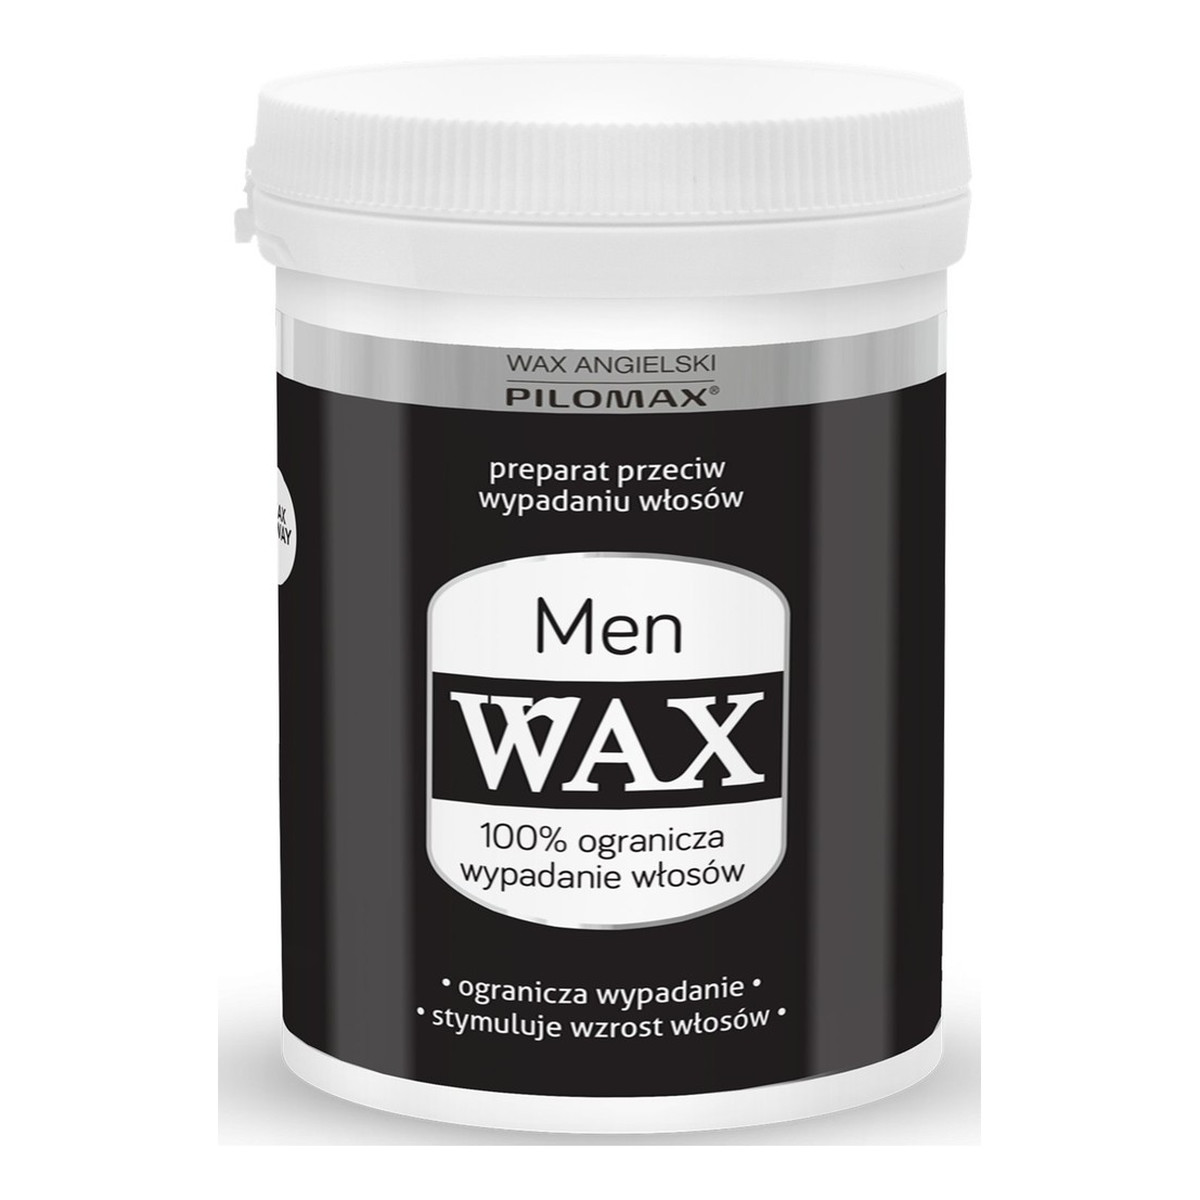 Pilomax Wax Men Preparat Przeciw Wypadaniu Włosów 240ml